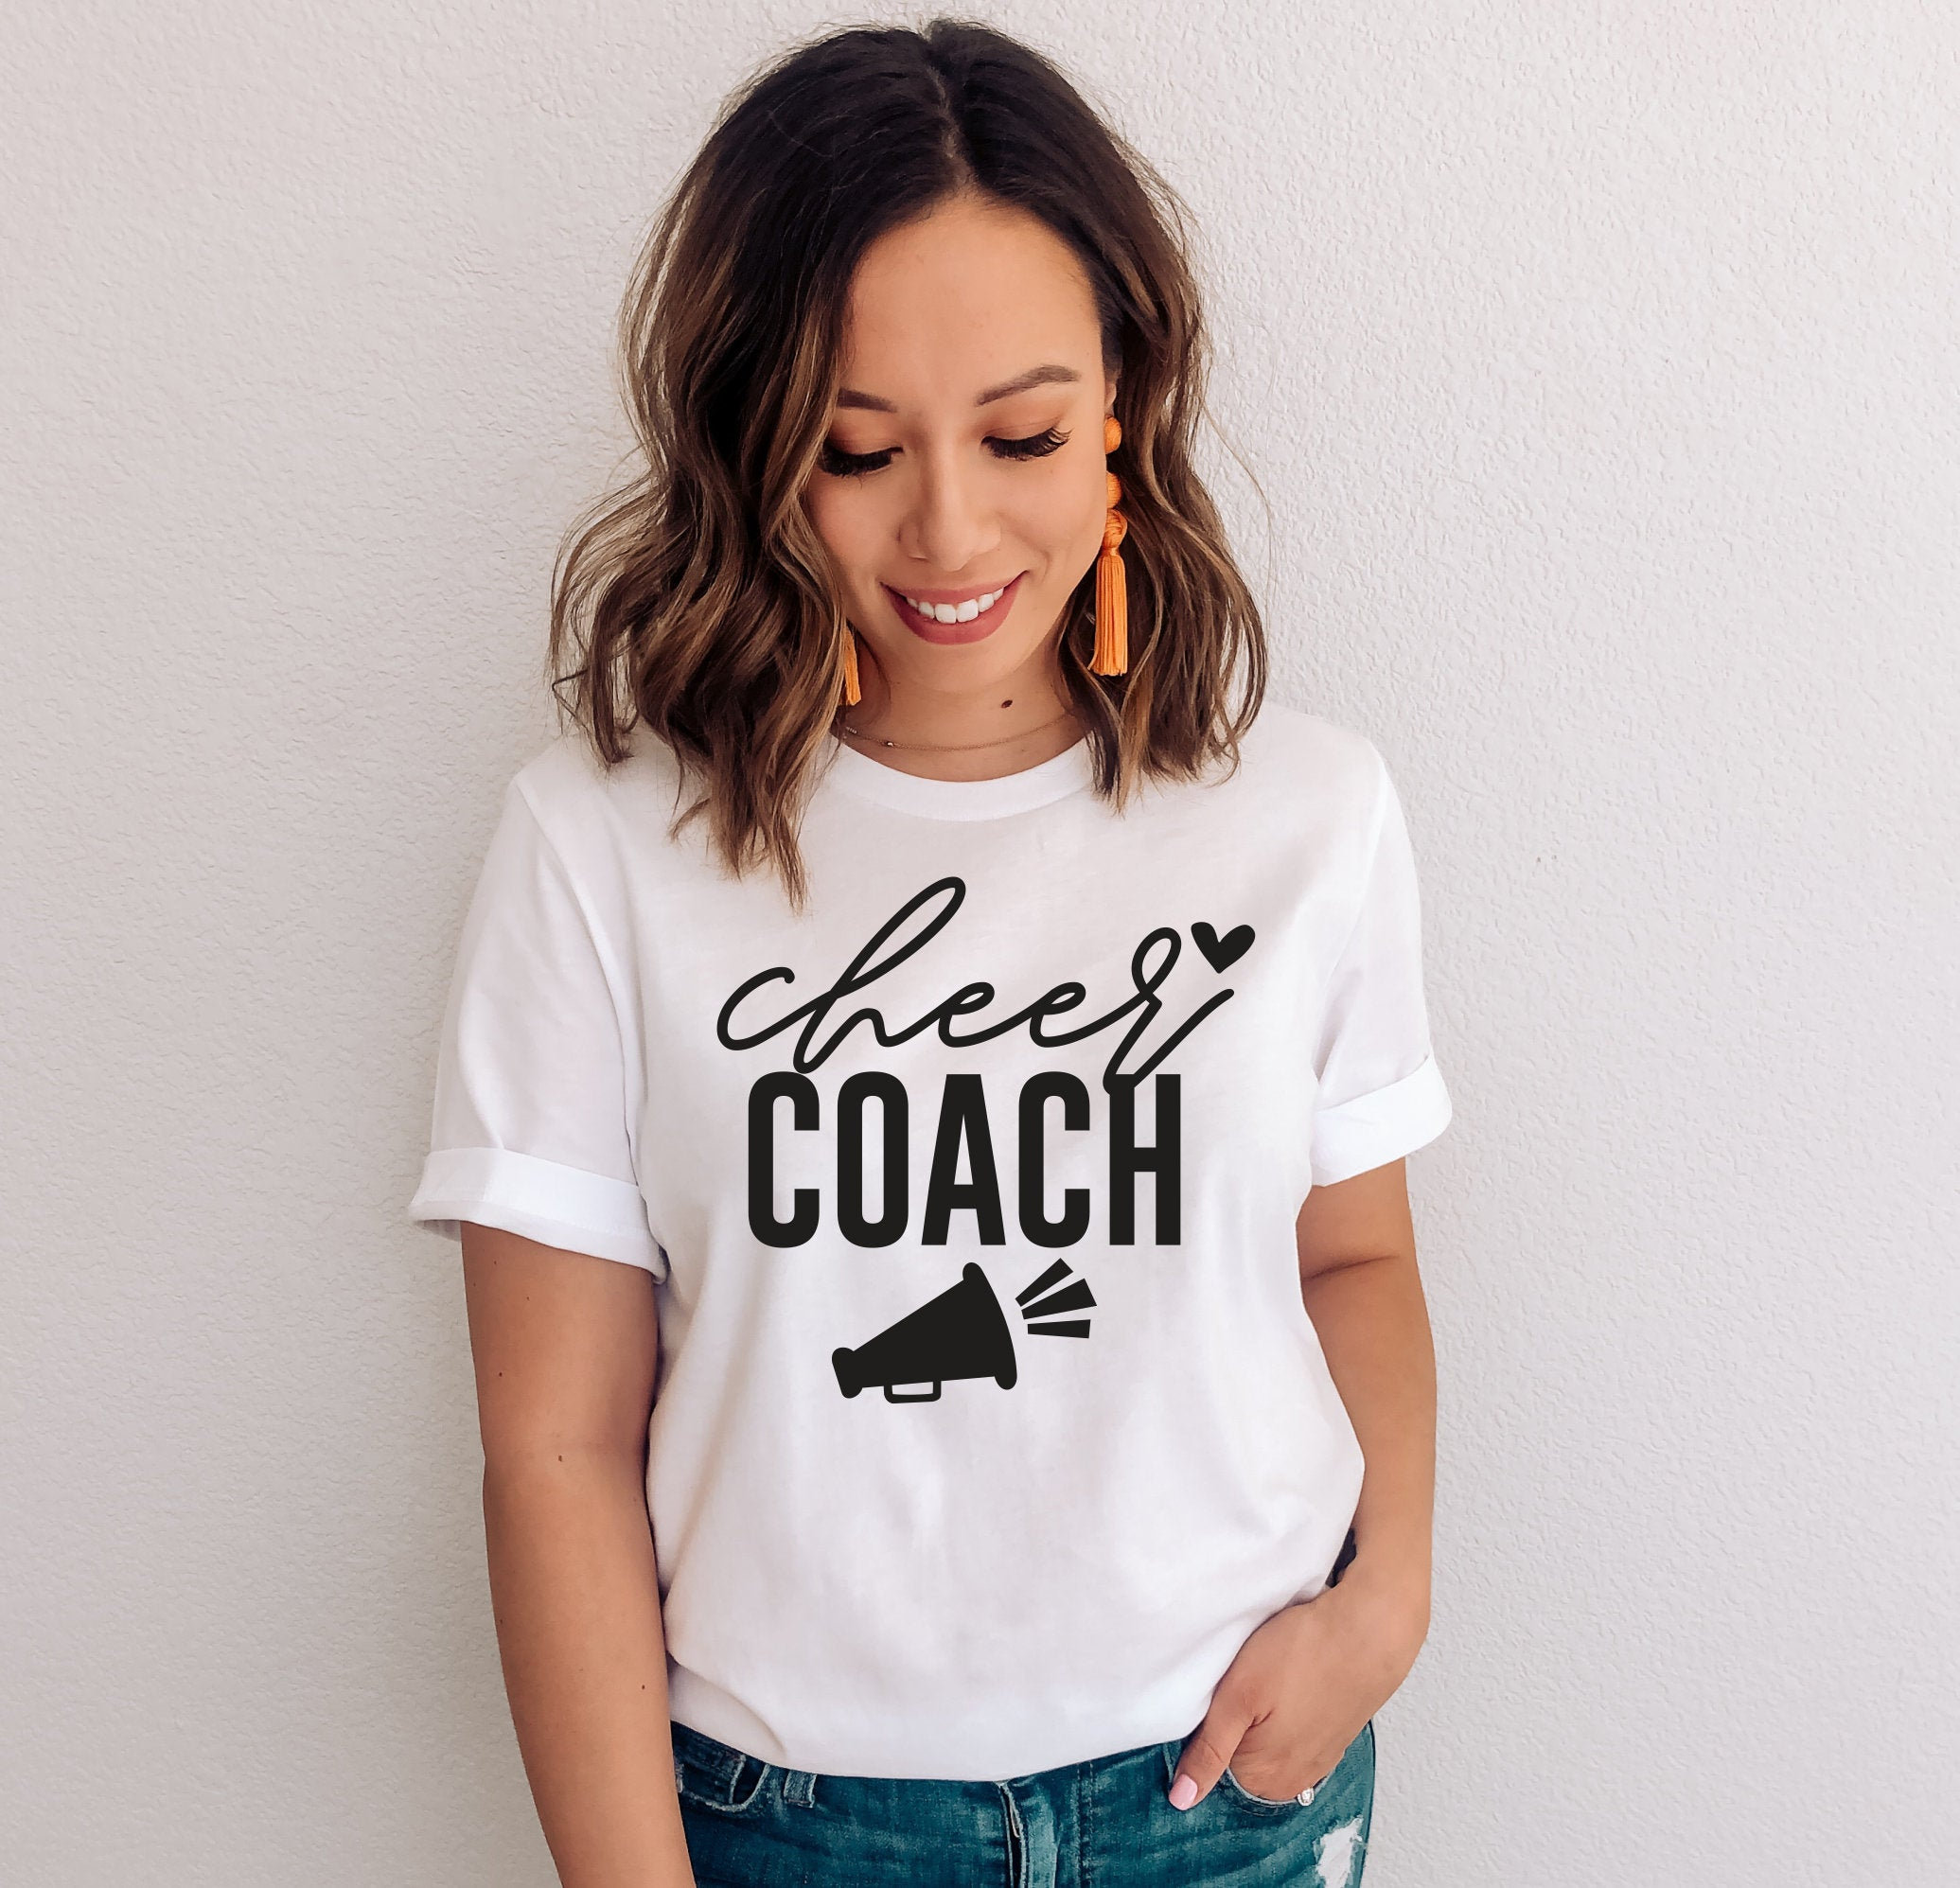 Cute Cheer Coach Shirt Cheerleader T-shirt Cheer Coach - Etsy Australia